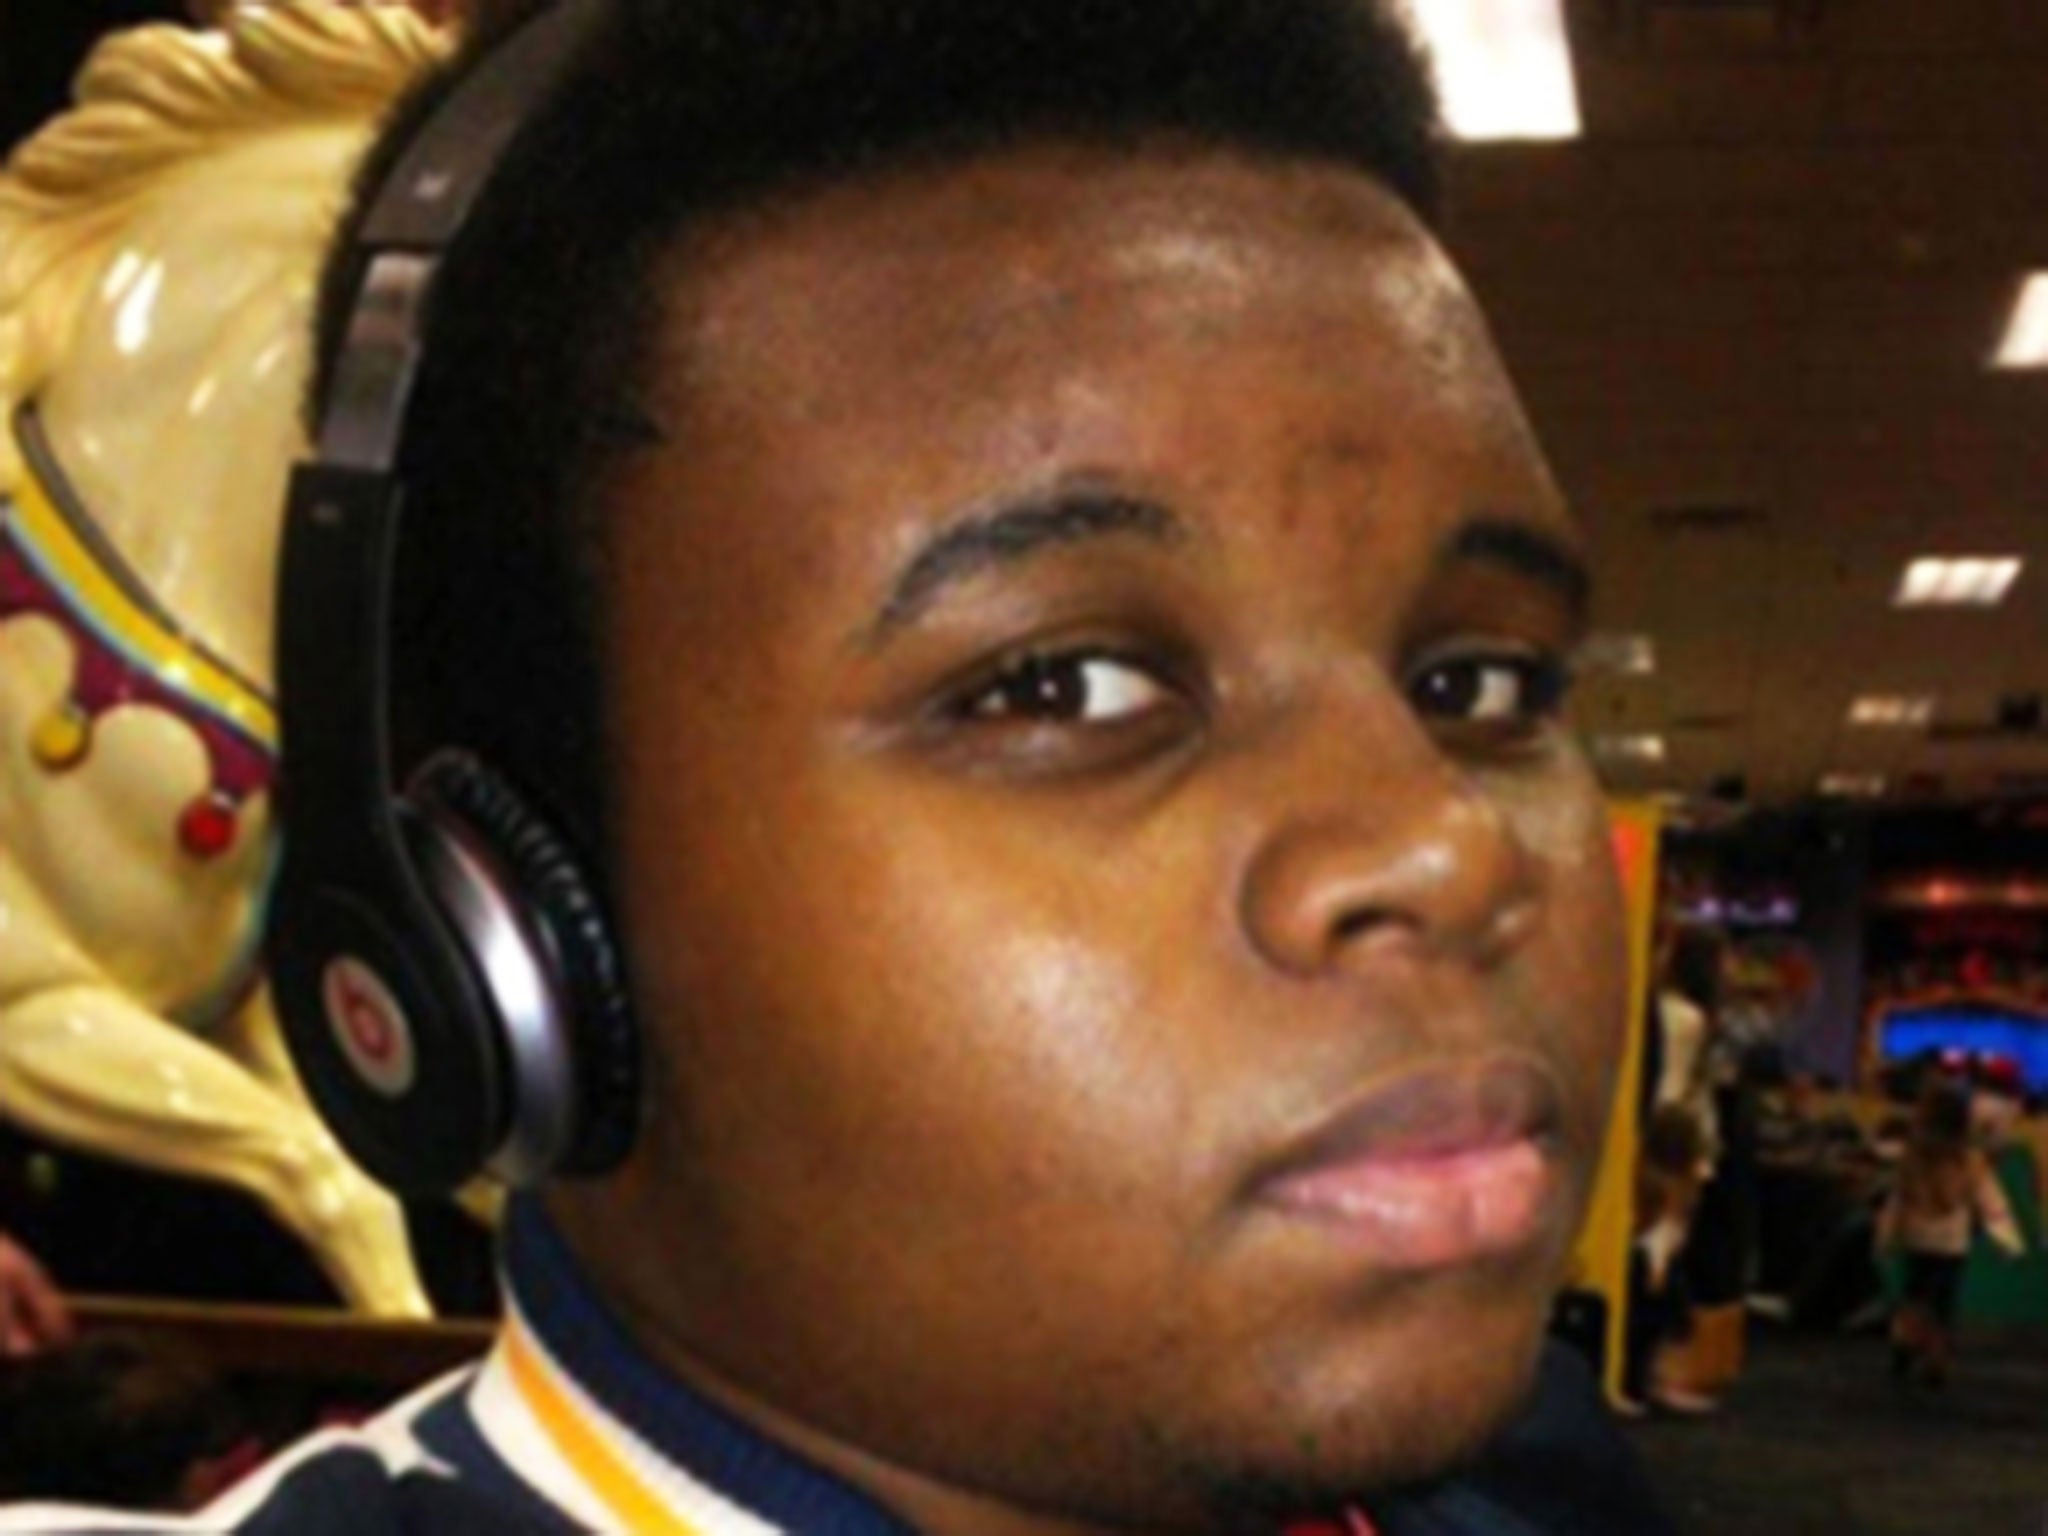 Michael Brown, 18, was shot dead in Ferguson, Missouri in August 2014